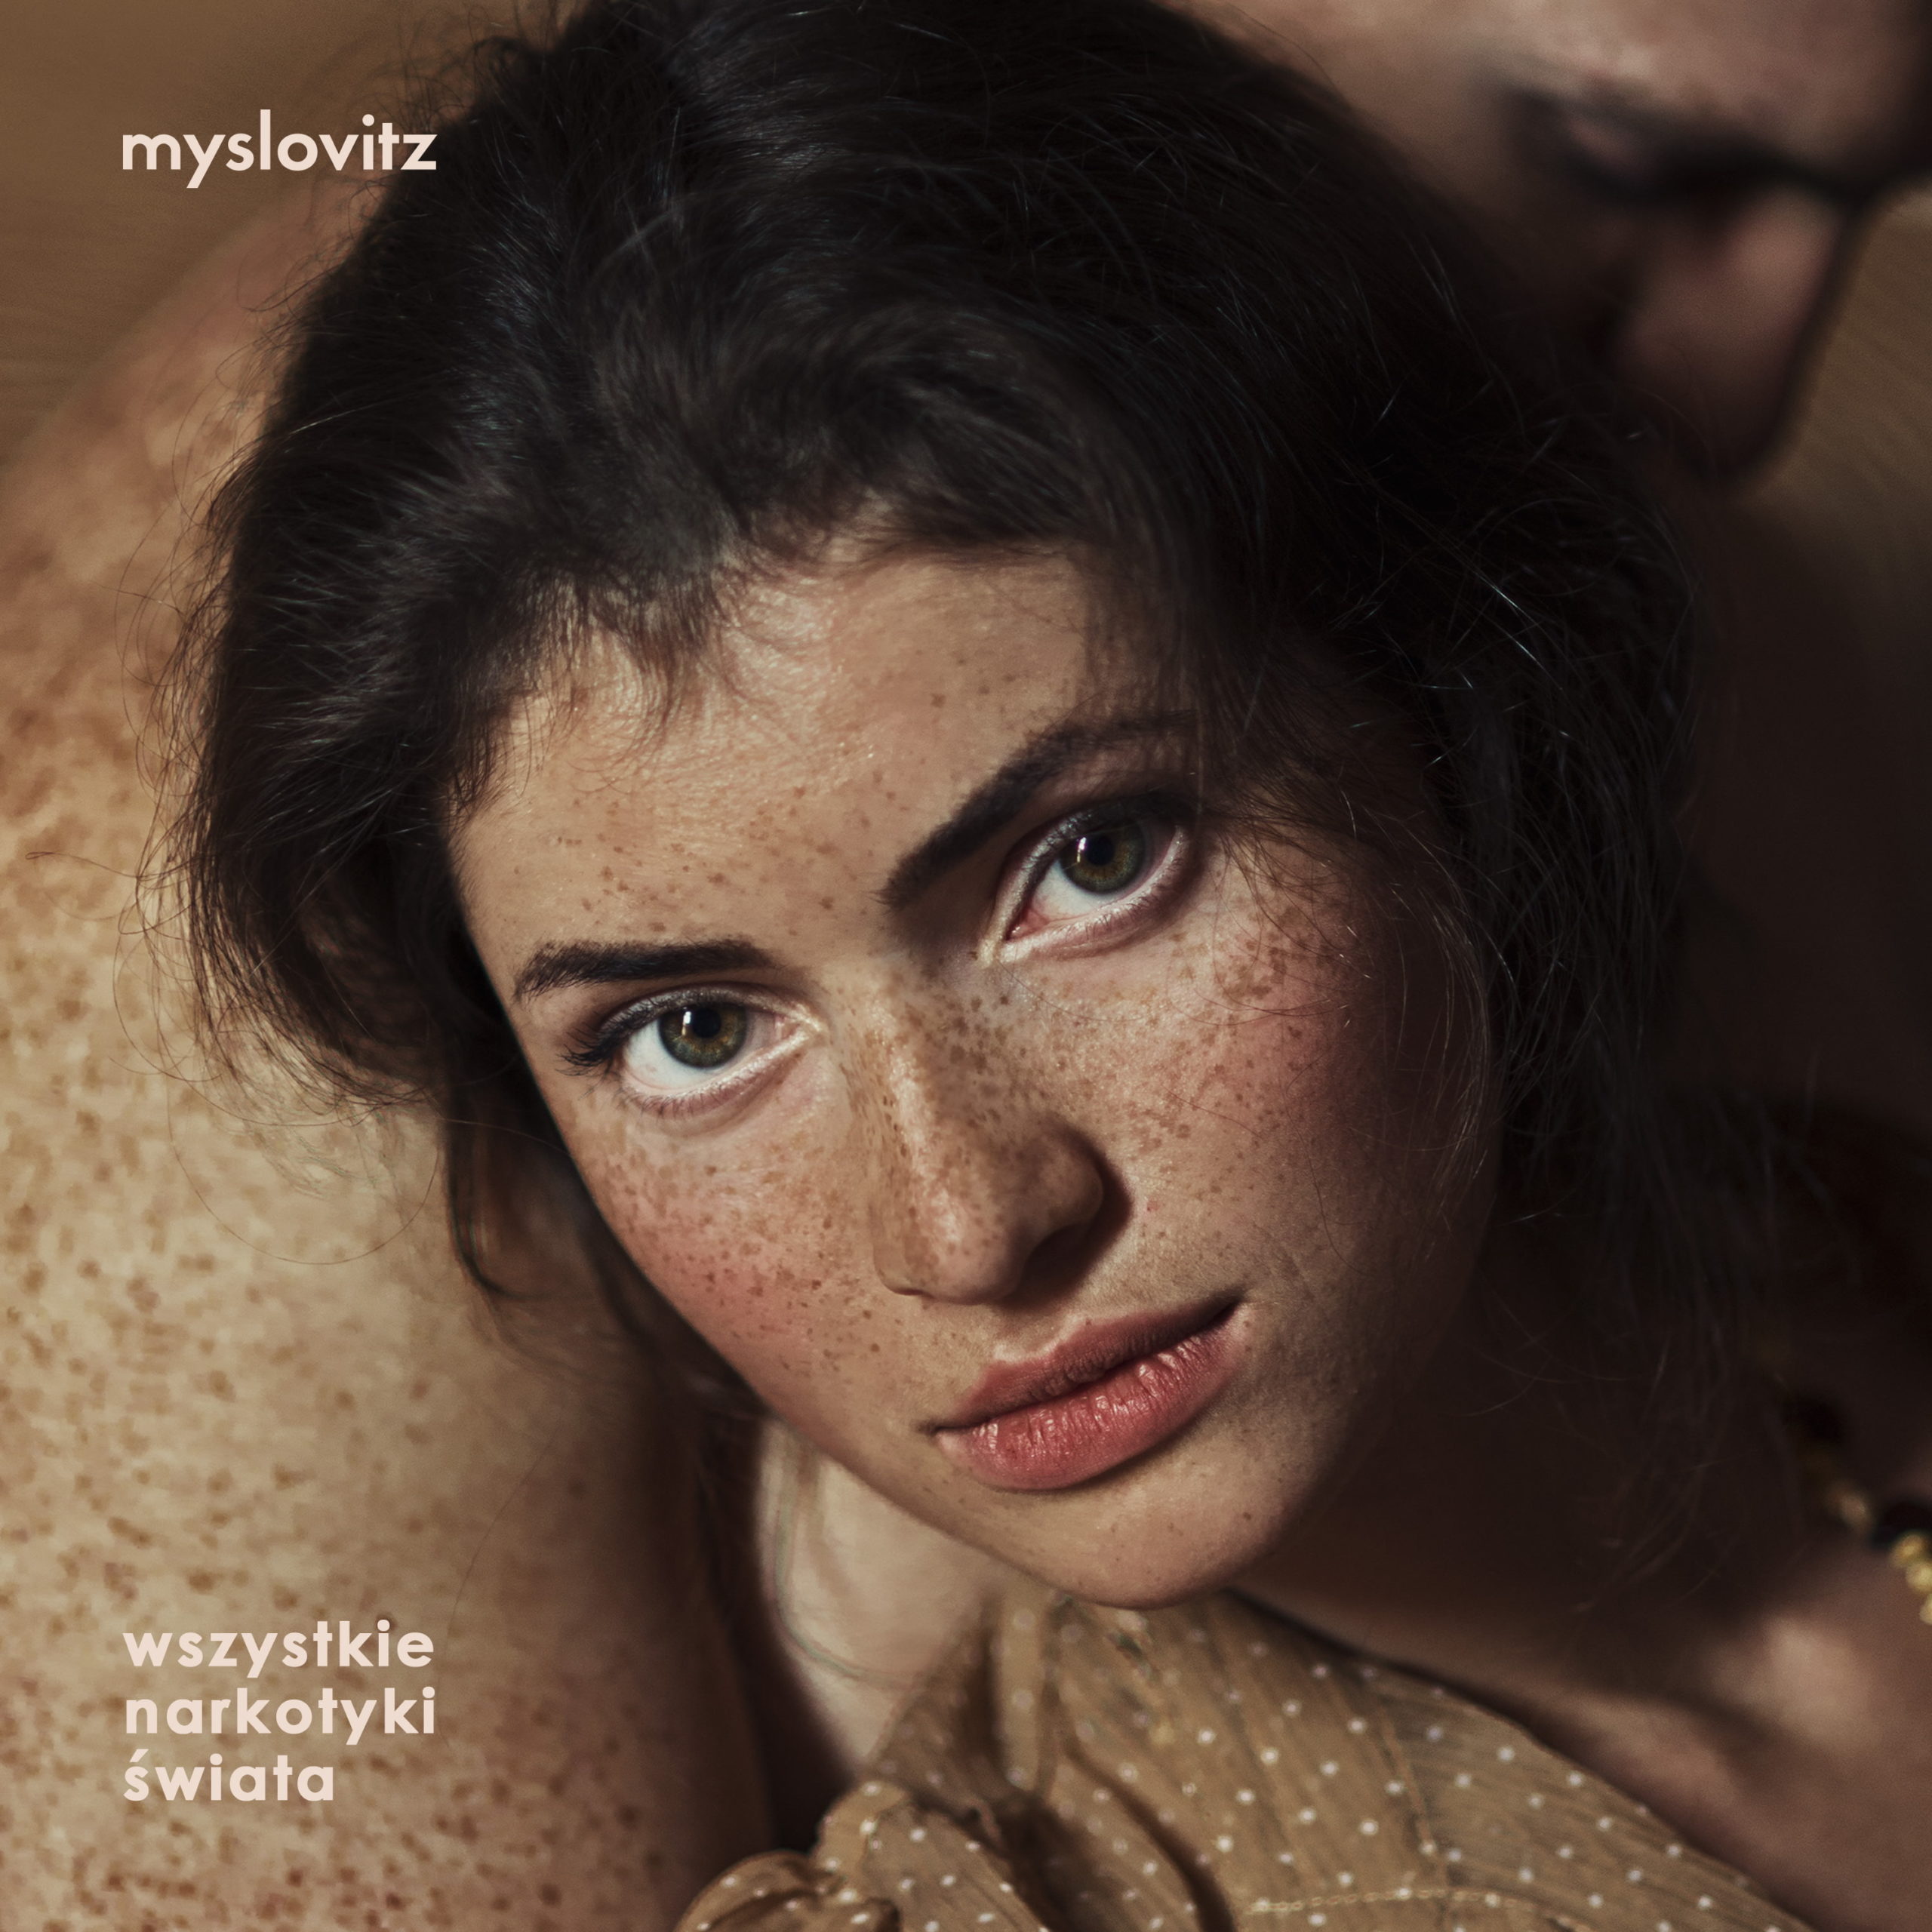 „Wszystkie narkotyki świata” – premiera nowego albumu Myslovitz 3.03.2023! Preorder już w sprzedaży